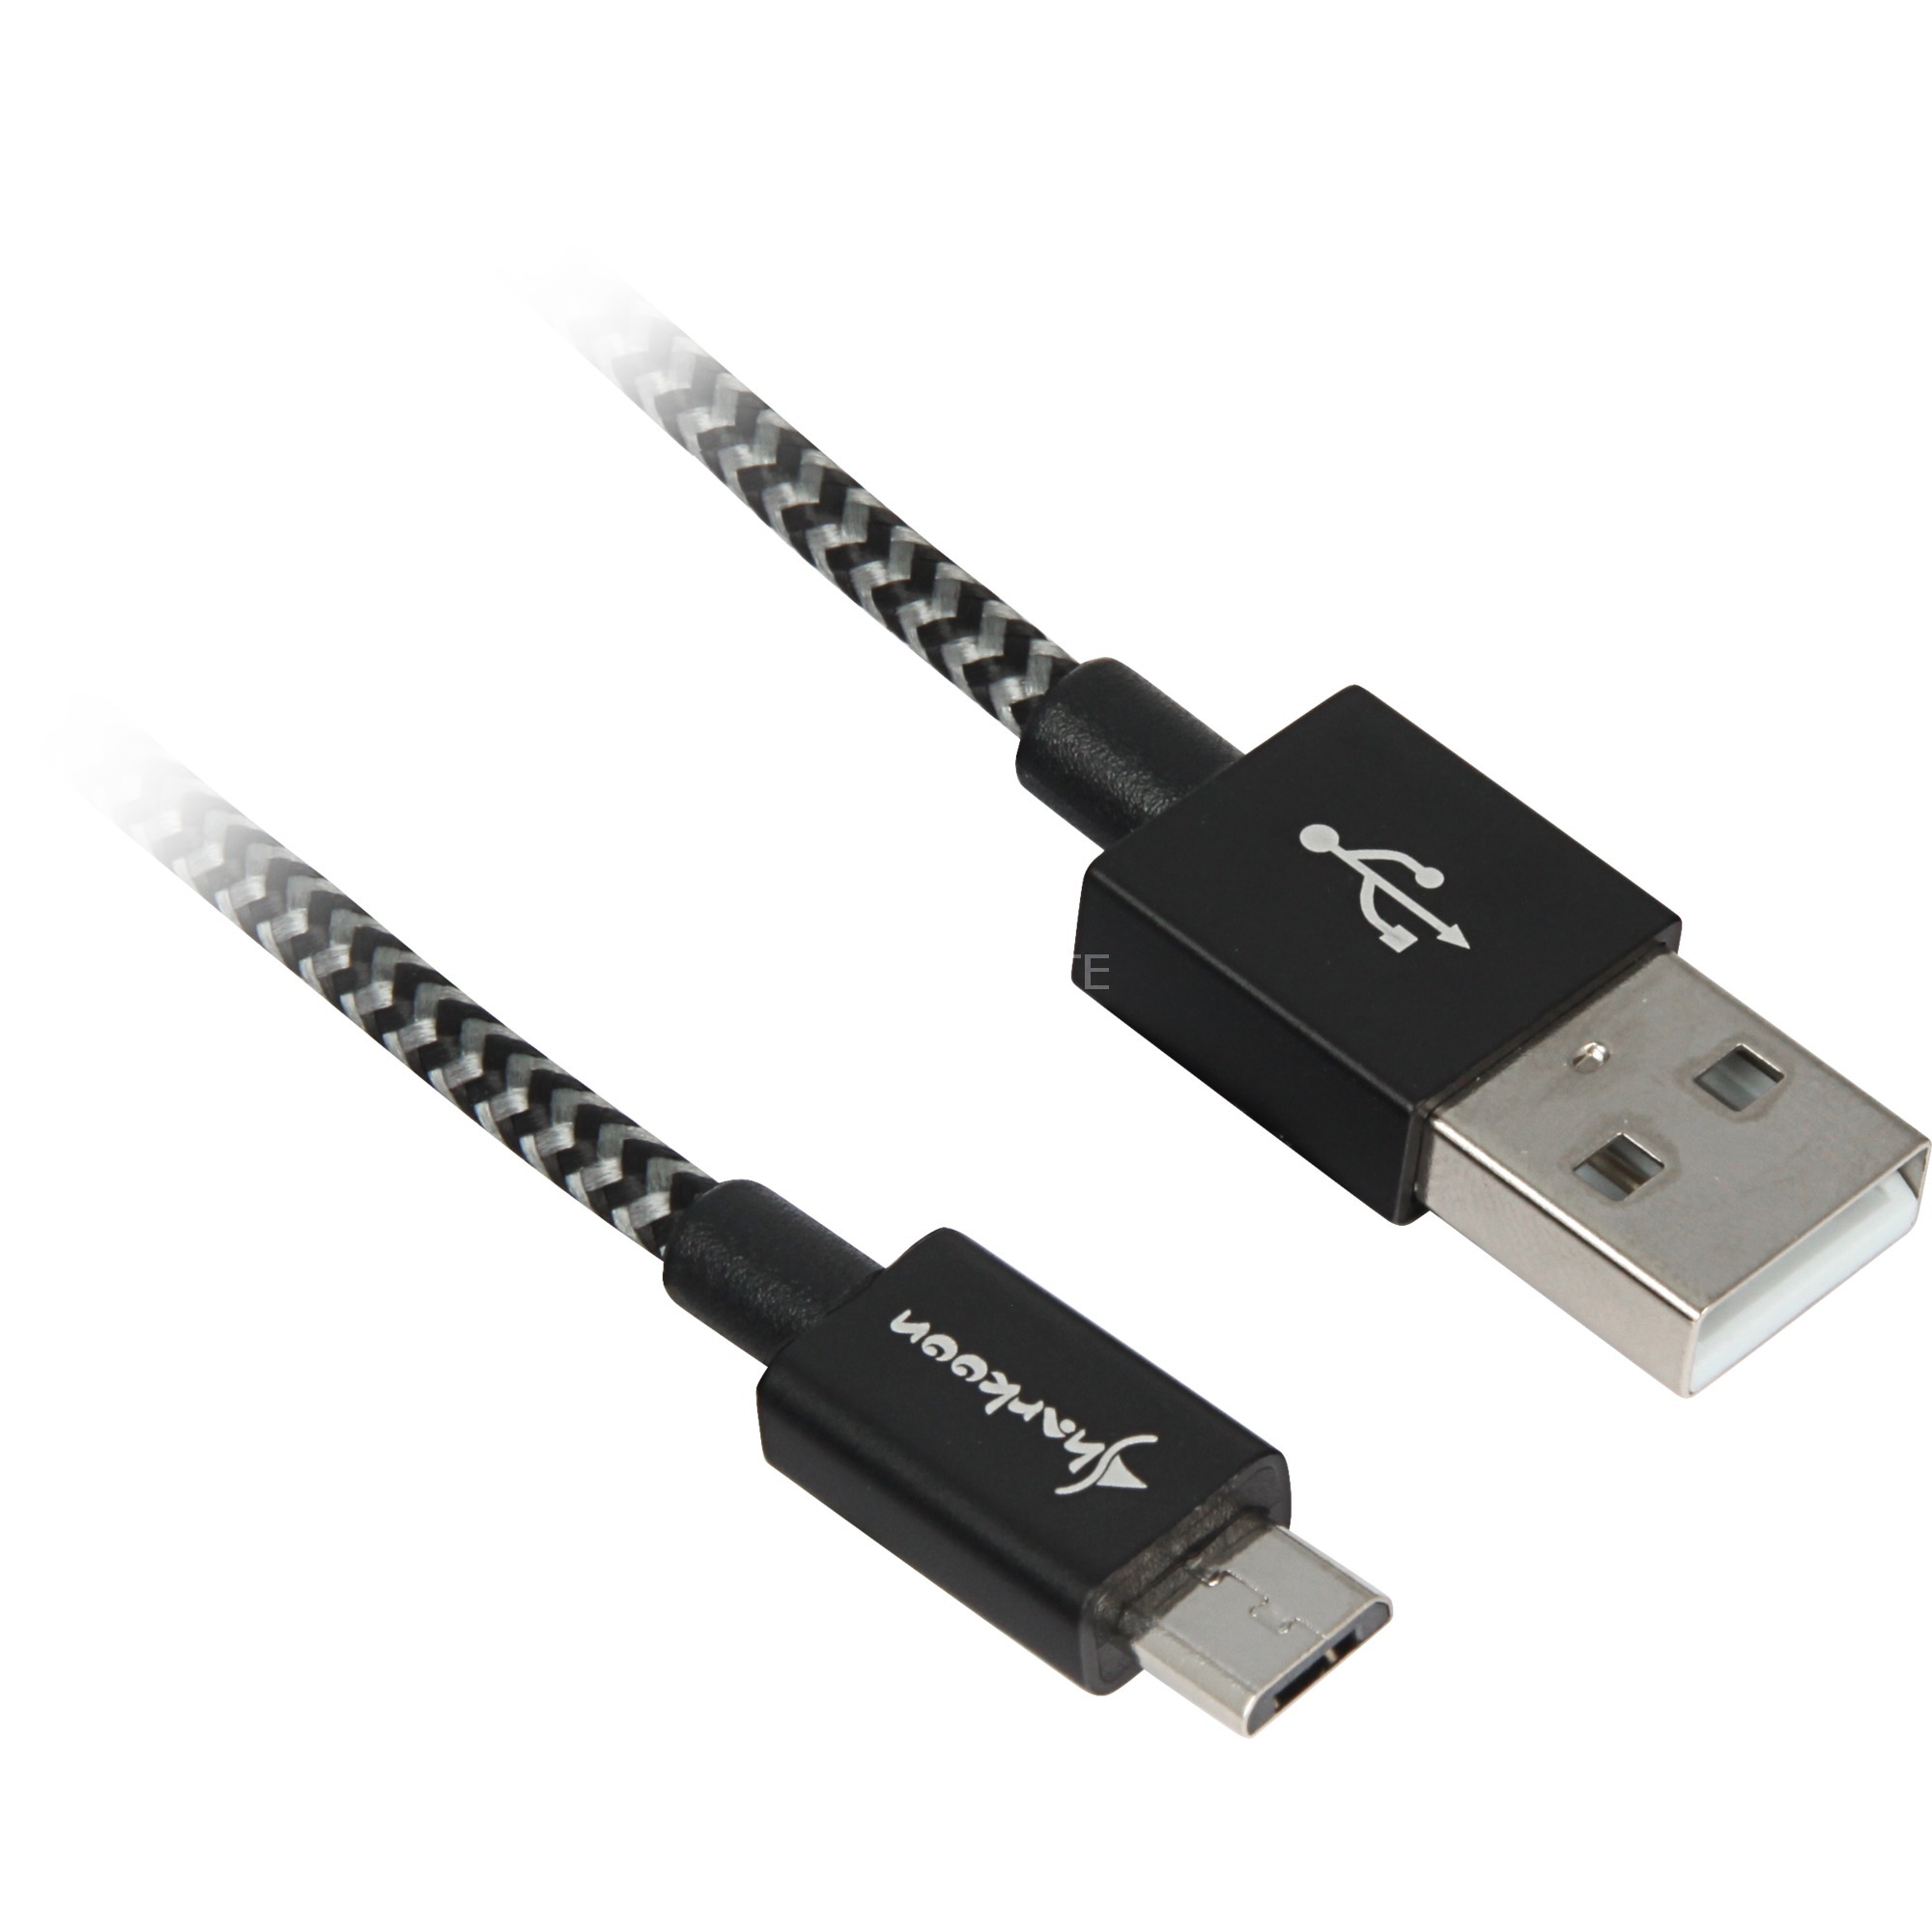 Image of Alternate - Kabel USB A 2.0 Stecker > Micro-USB Stecker (Alu + Braid), Adapter online einkaufen bei Alternate